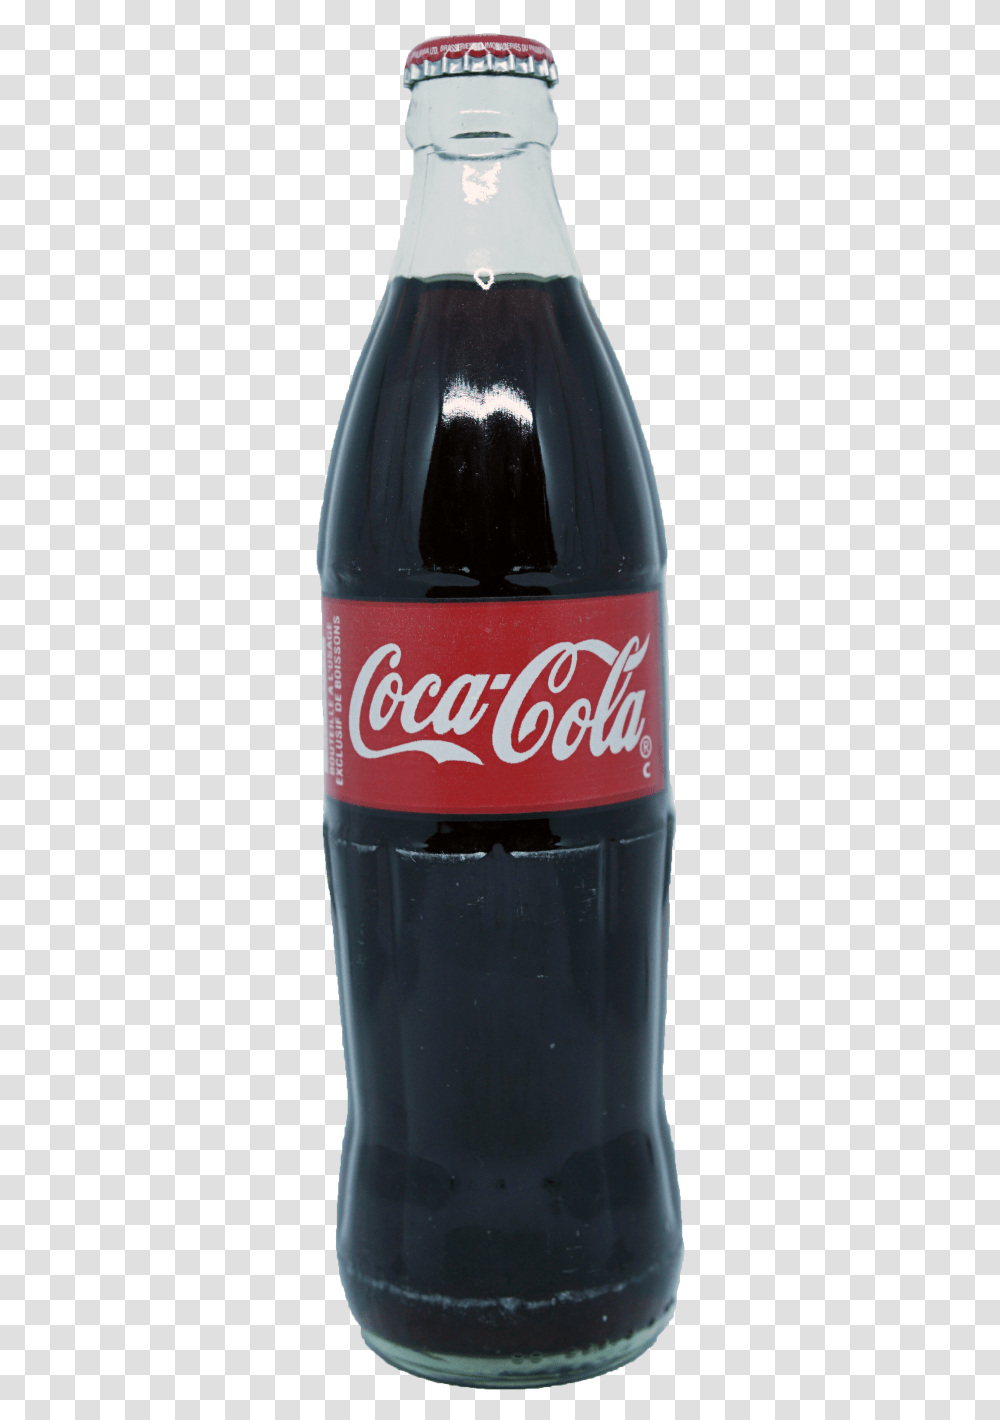 Fanta Bottle 500ml In Beverages Imagen Coca Cola 500 Ml, Coke, Drink, Beer, Alcohol Transparent Png